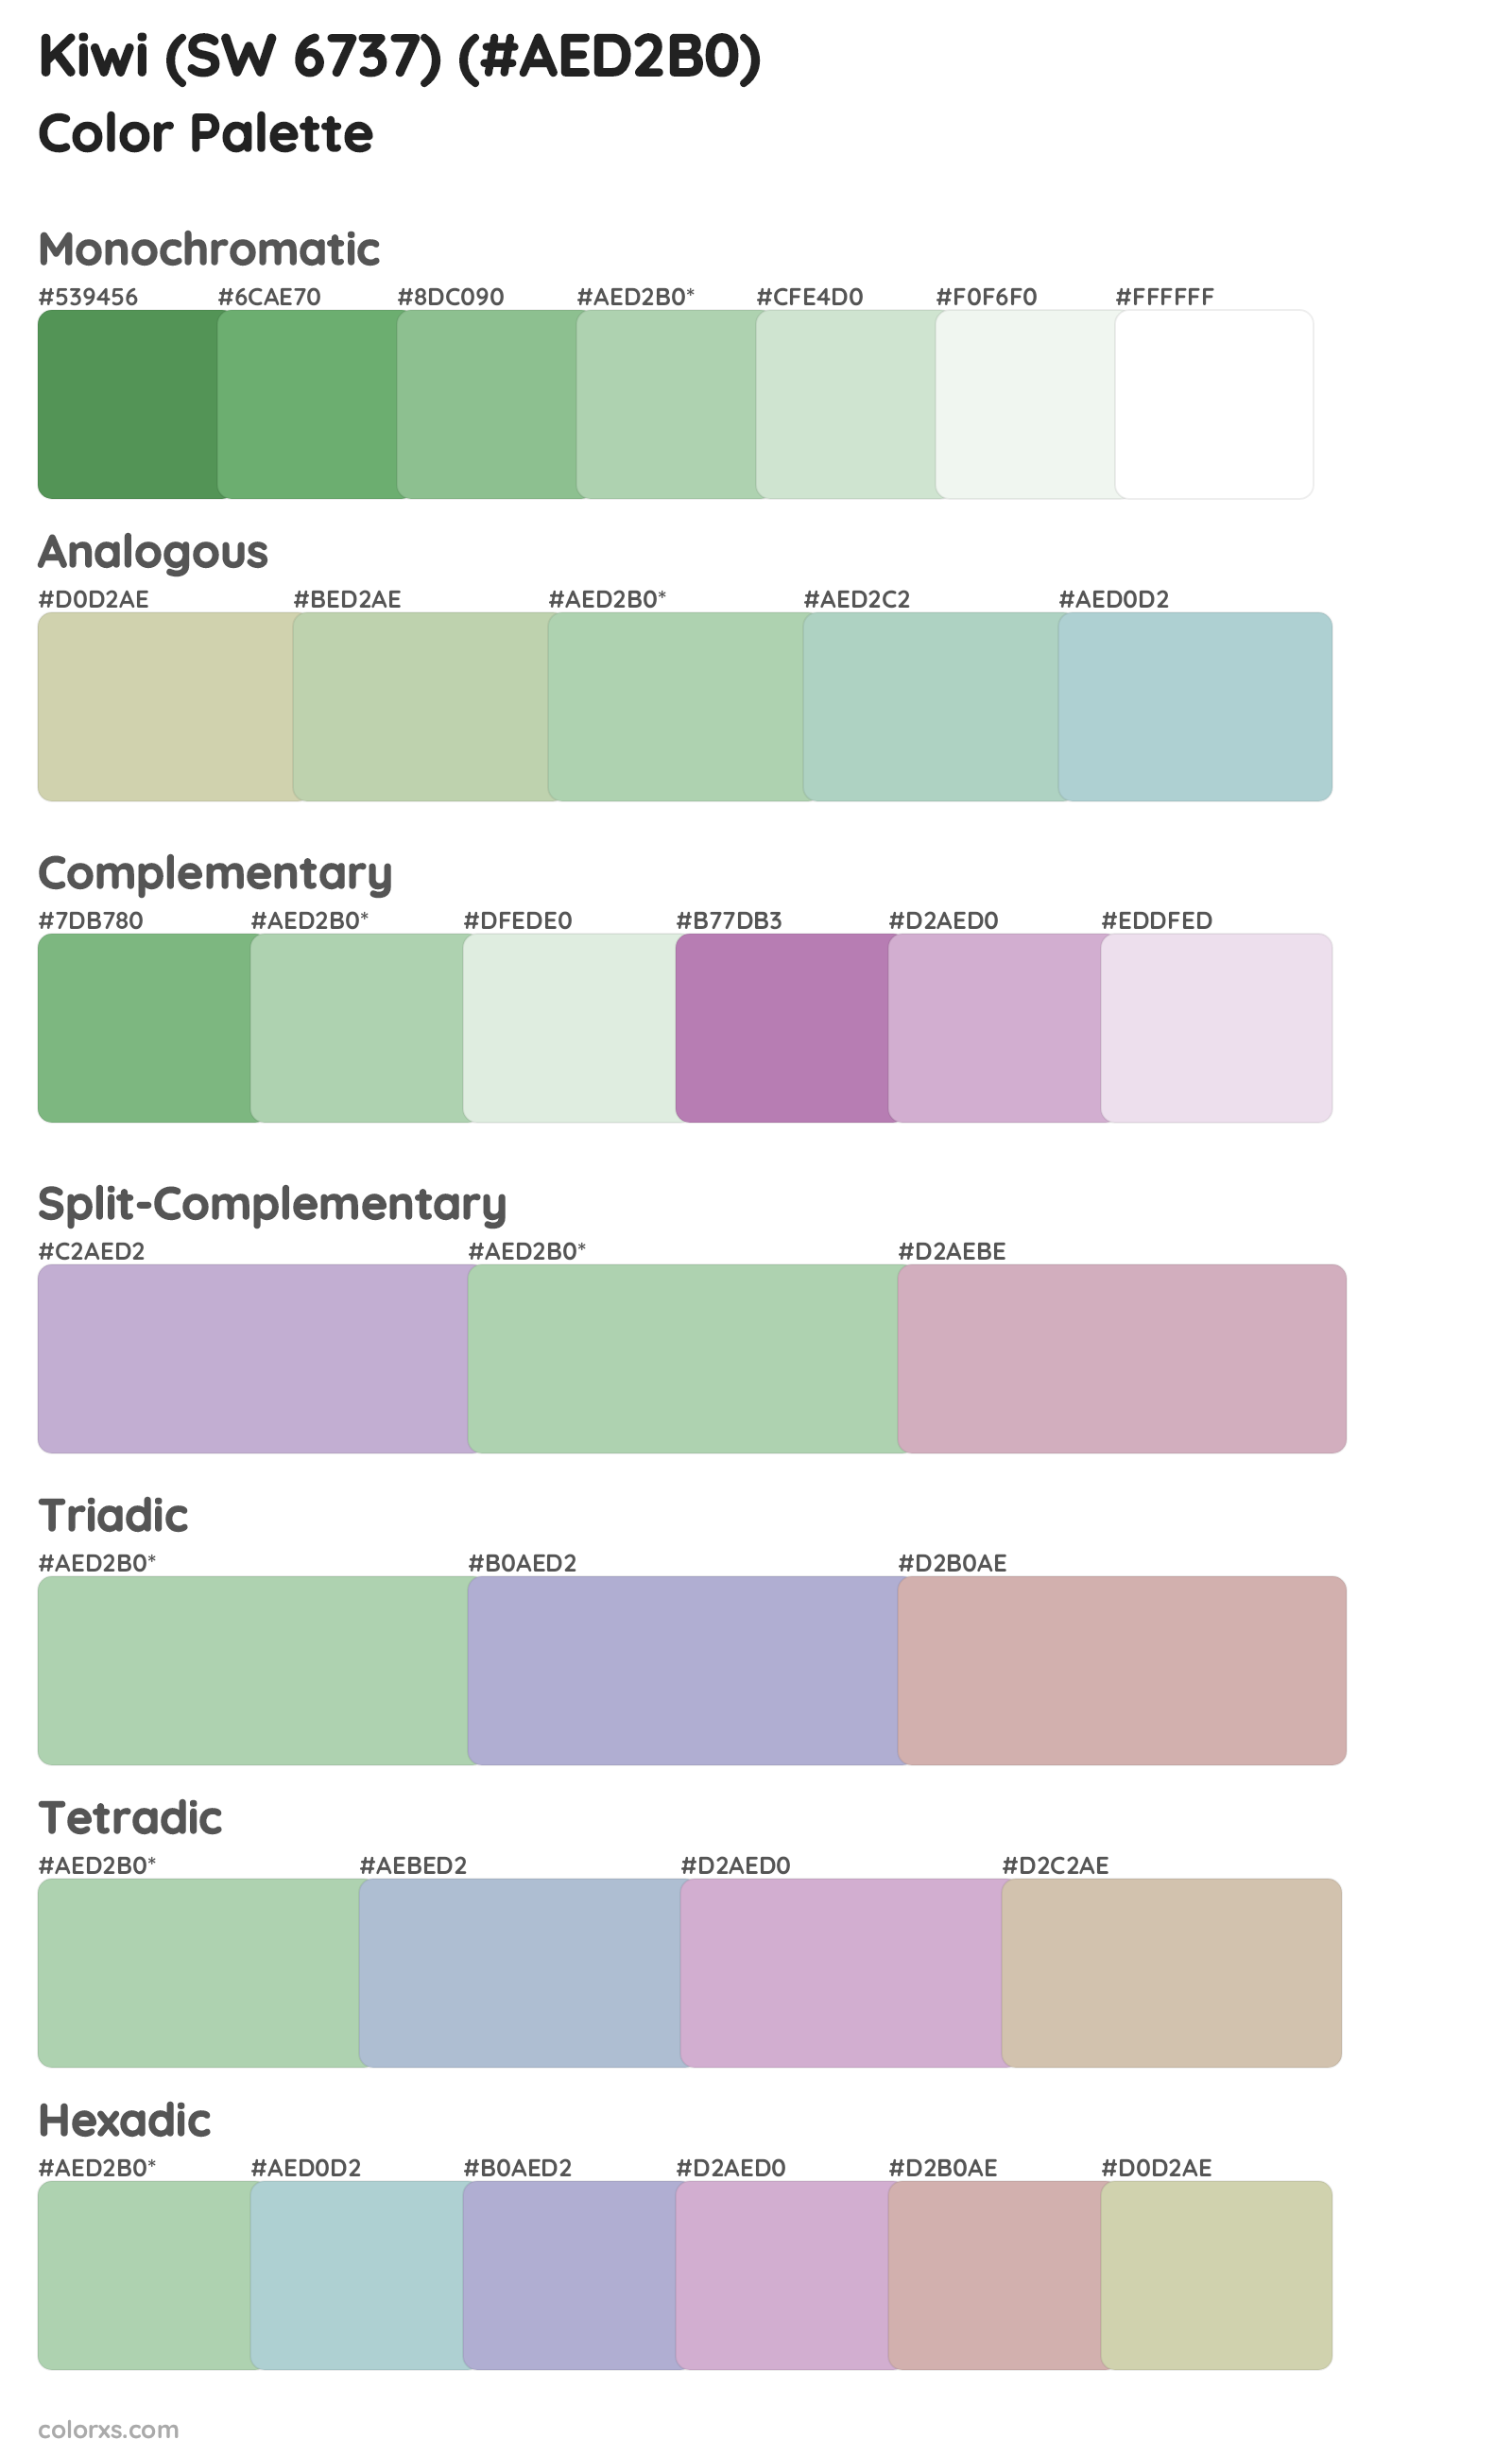 Kiwi (SW 6737) Color Scheme Palettes